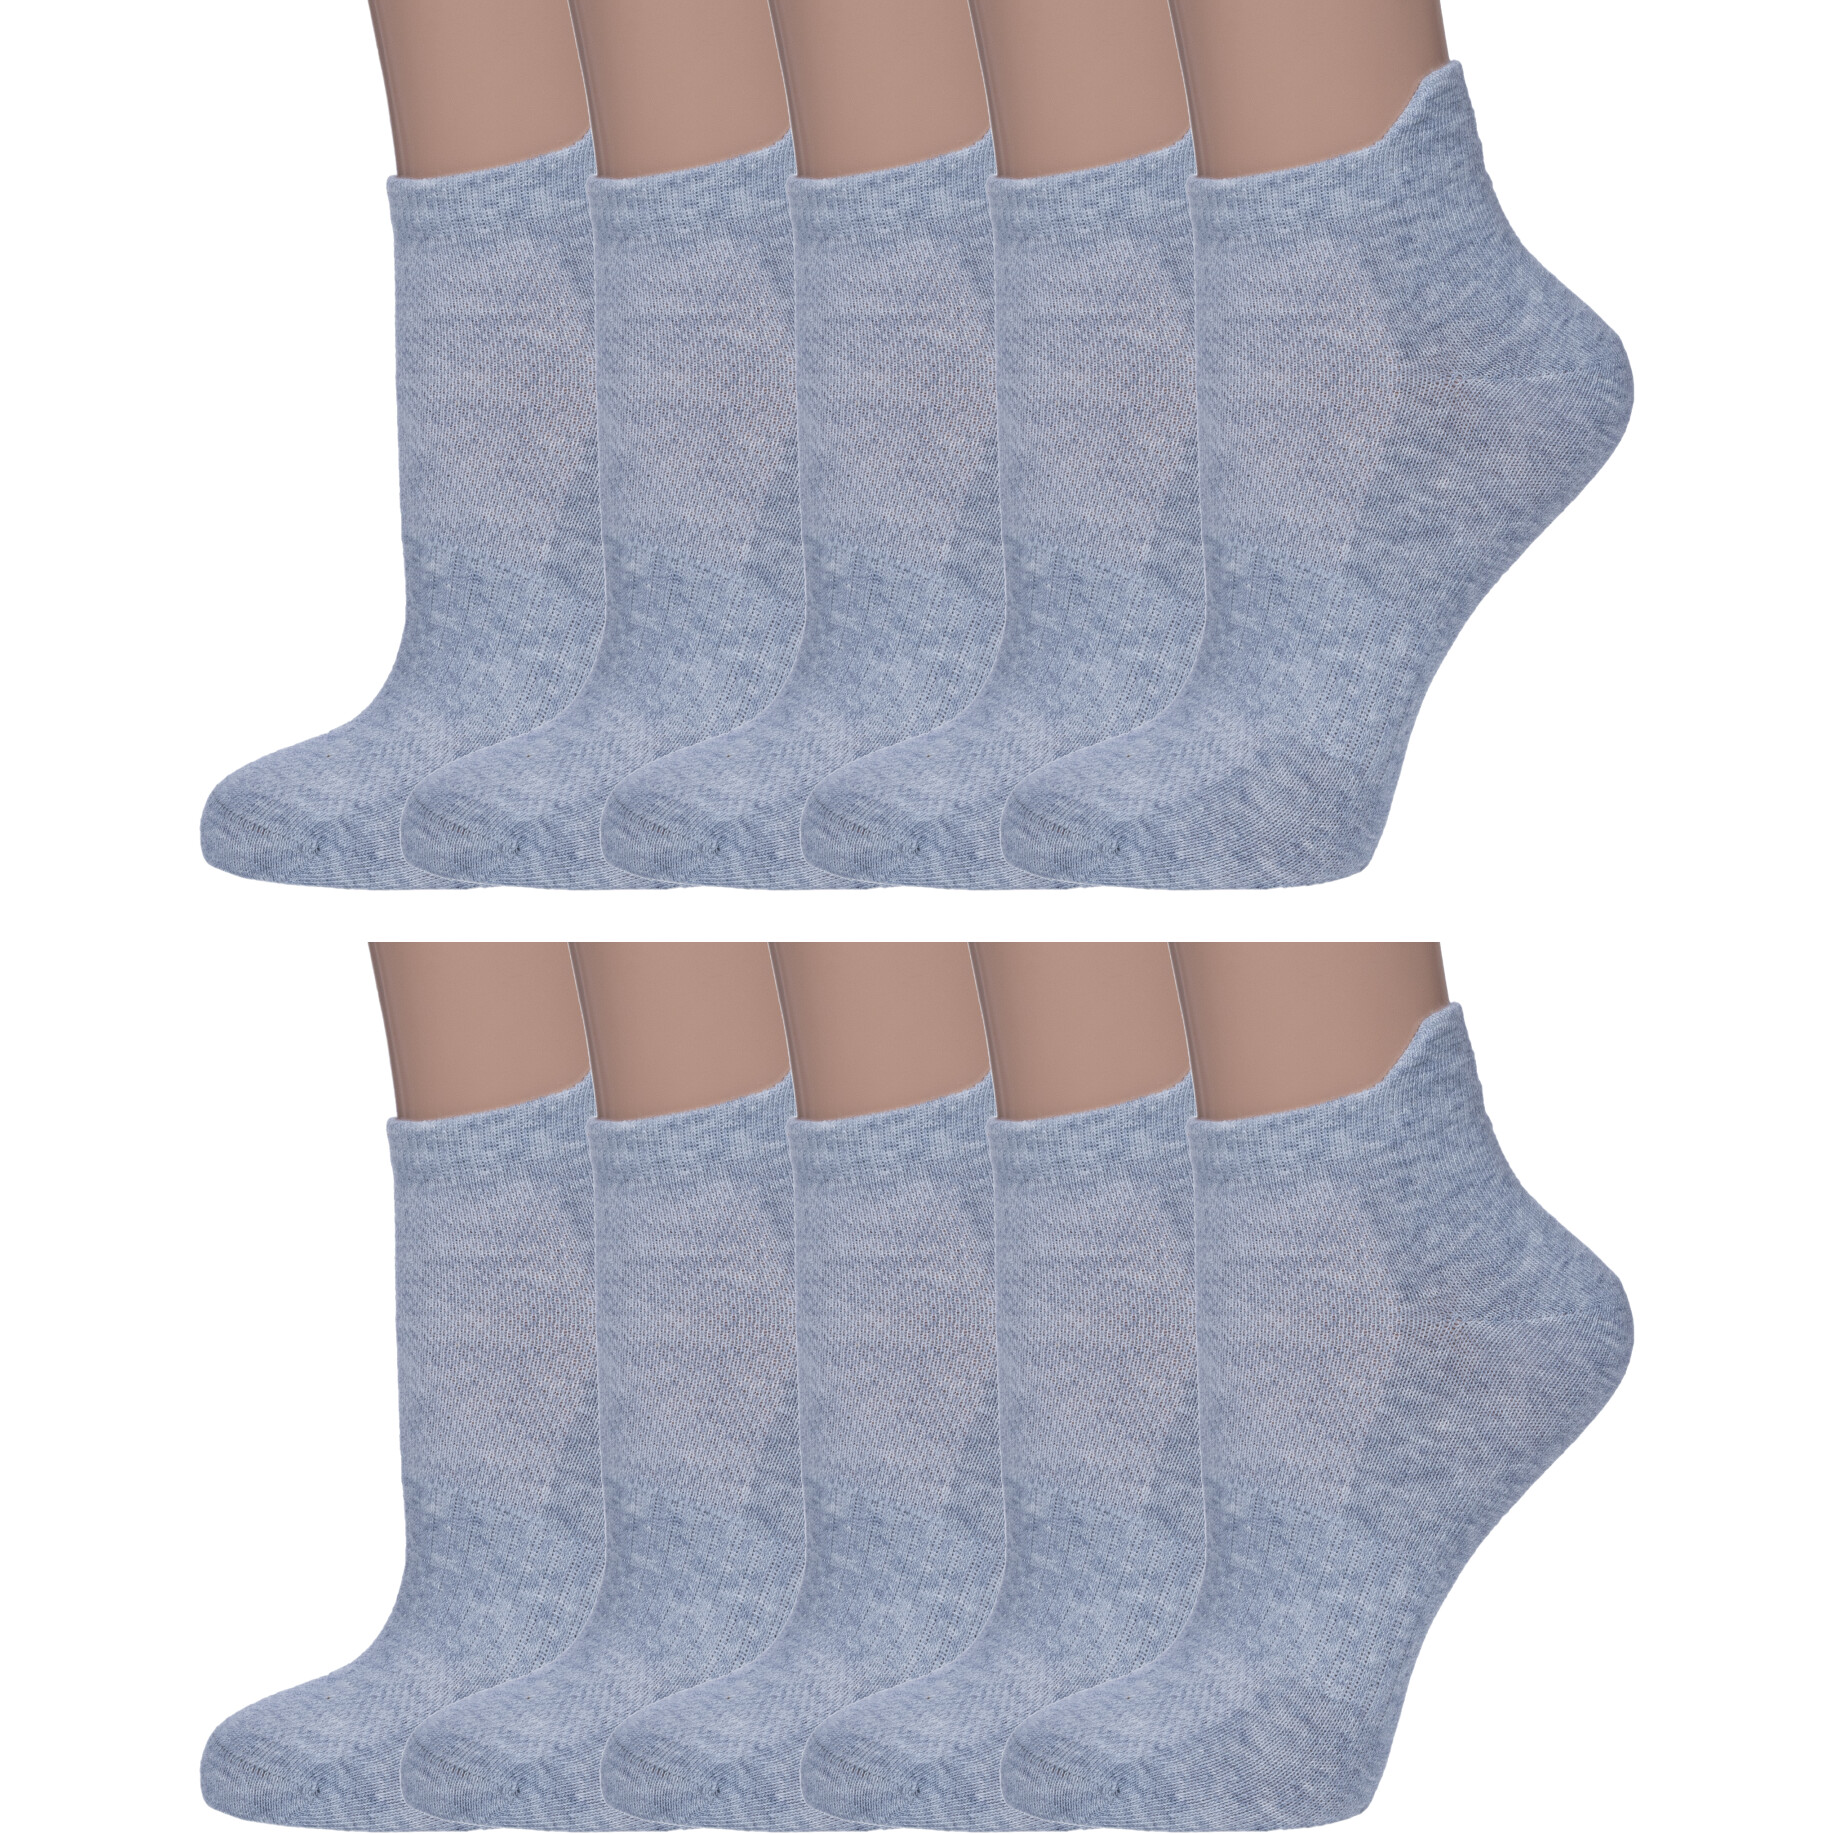 Комплект носков женских Смоленская Чулочная Фабрика 10-422С22 серых 23, 10 пар